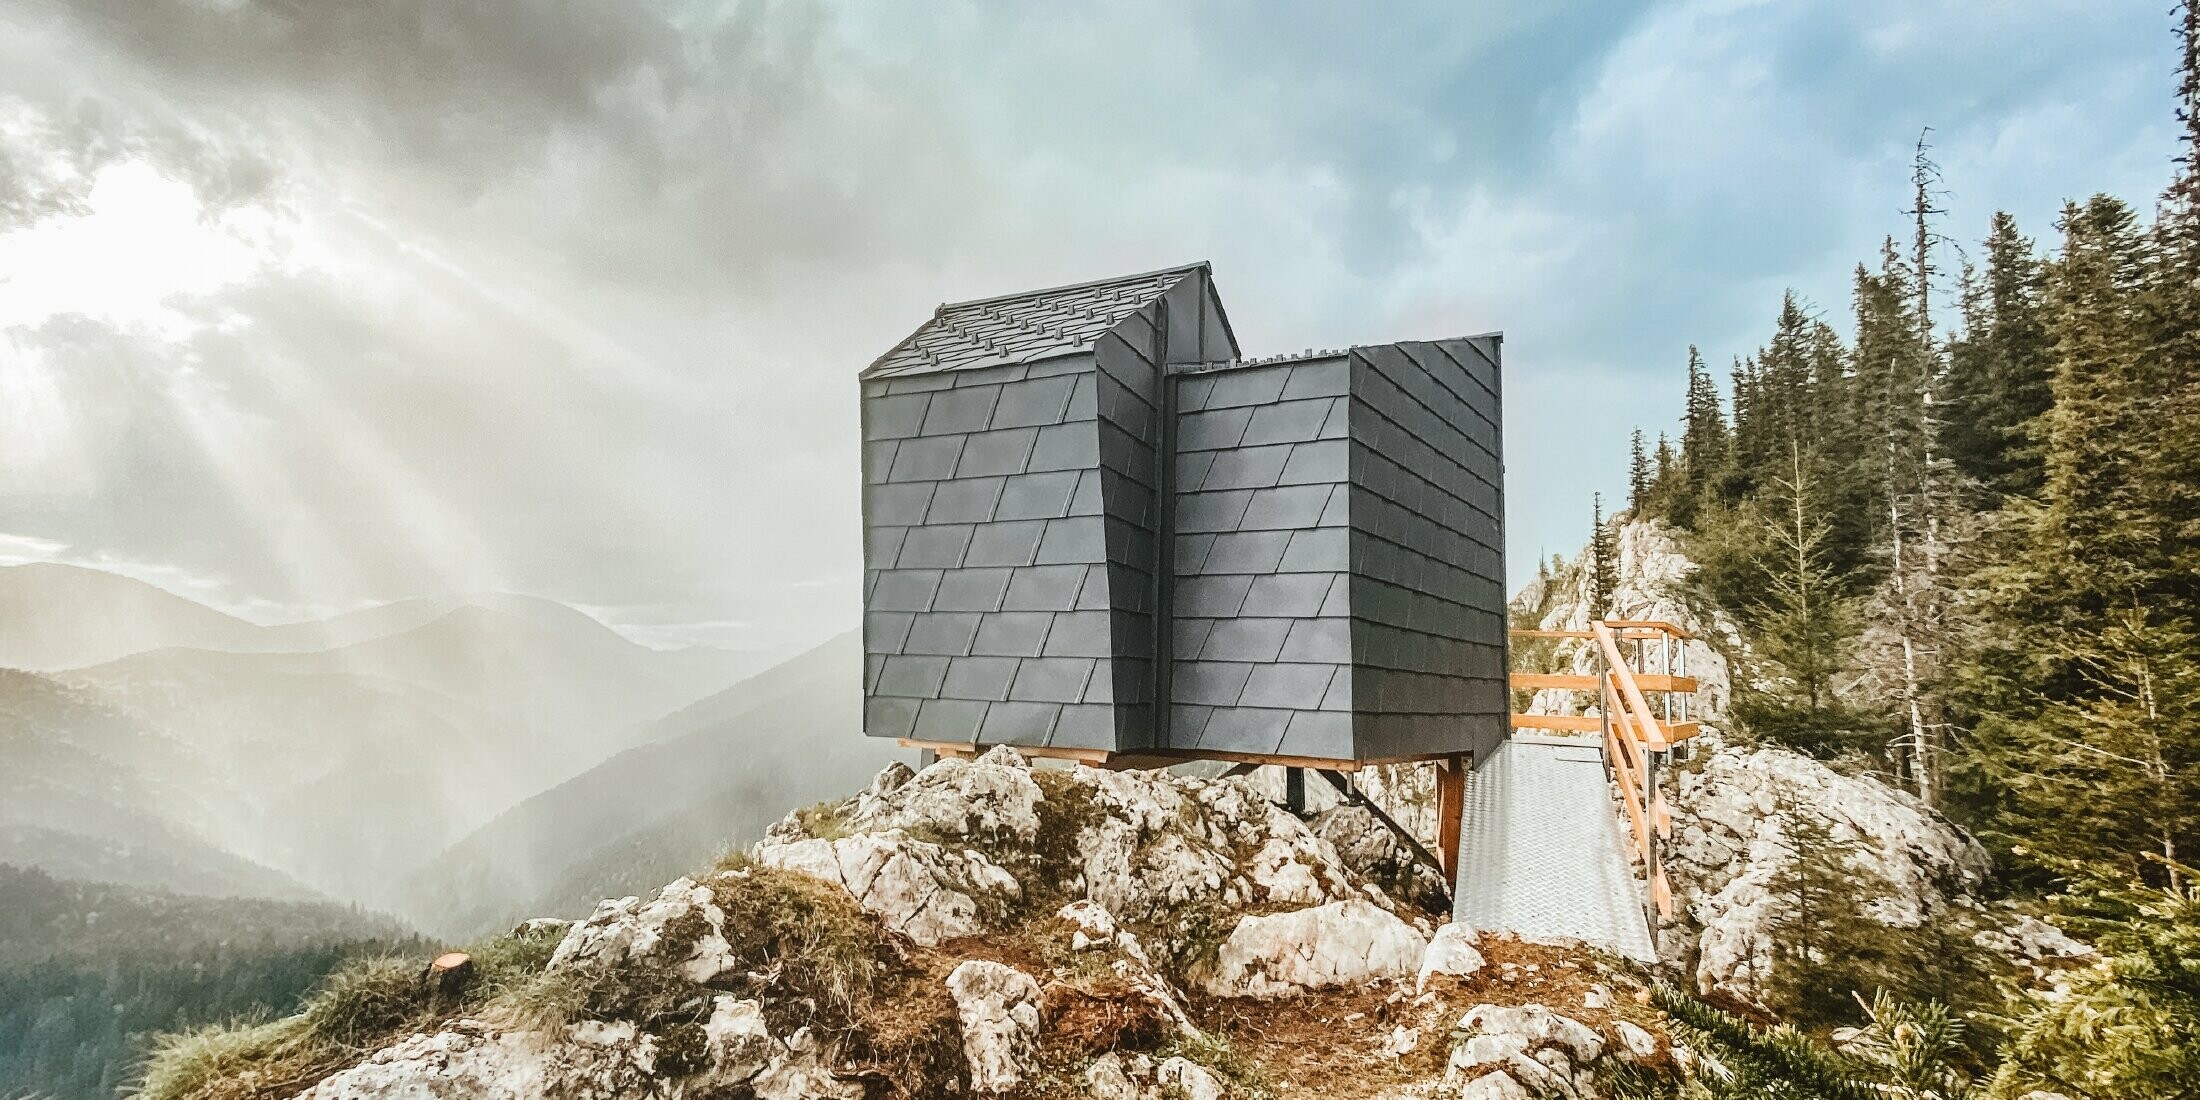 Kleine Schutzhütte in exponierter Lage, verkleidet mit dem witterungsbeständigen Aluminium von PREFA, Dachschindel DS.19 in P.10 Steingrau